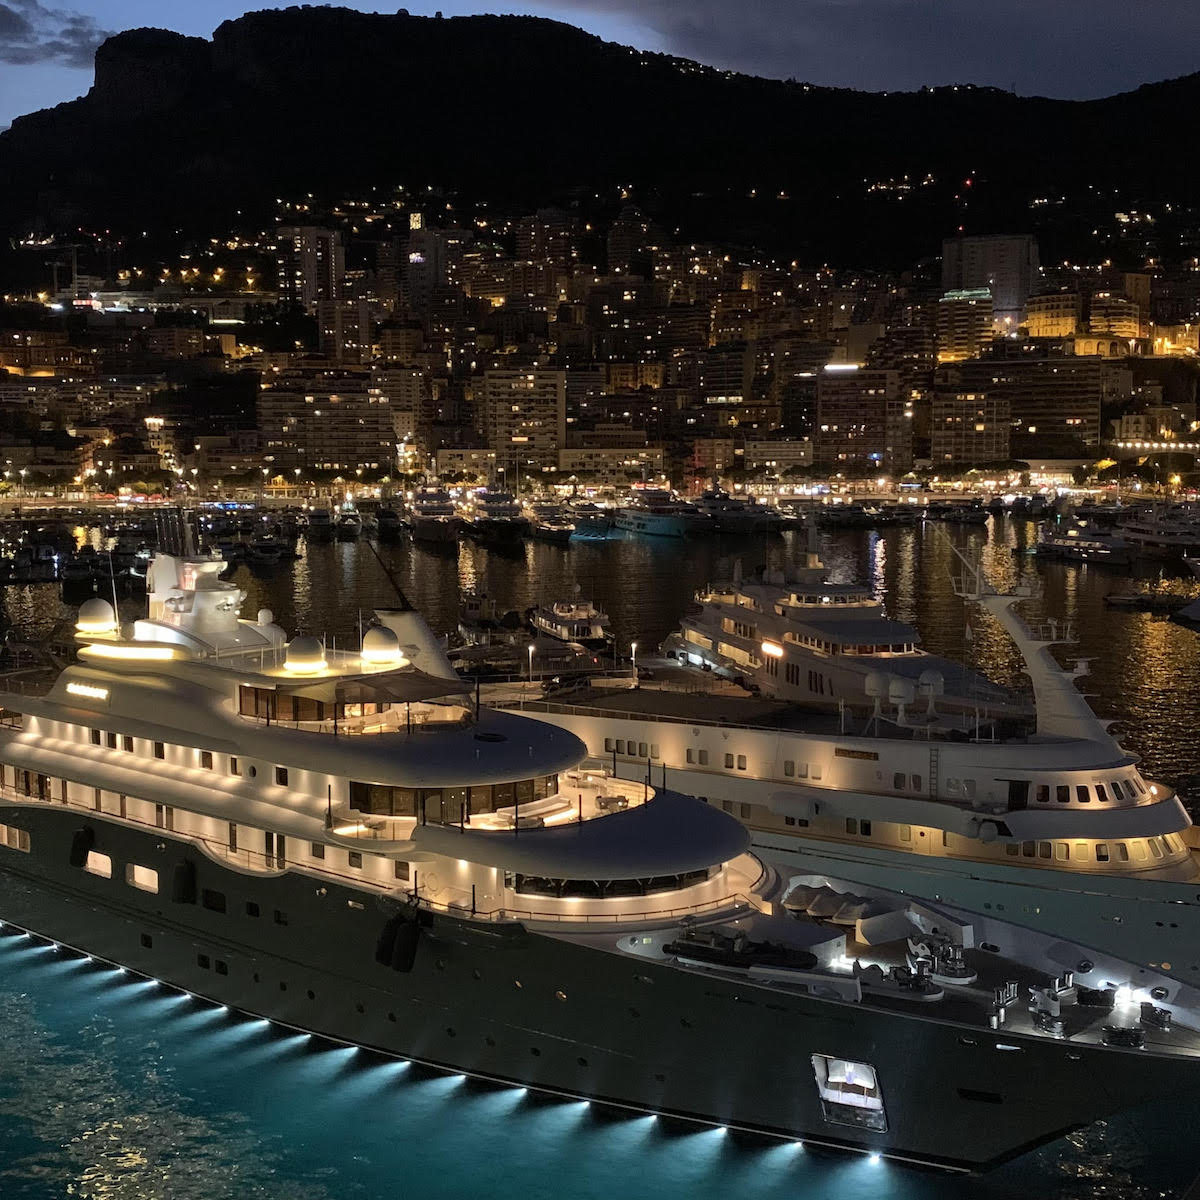 Monte Carlo at night in Monaco